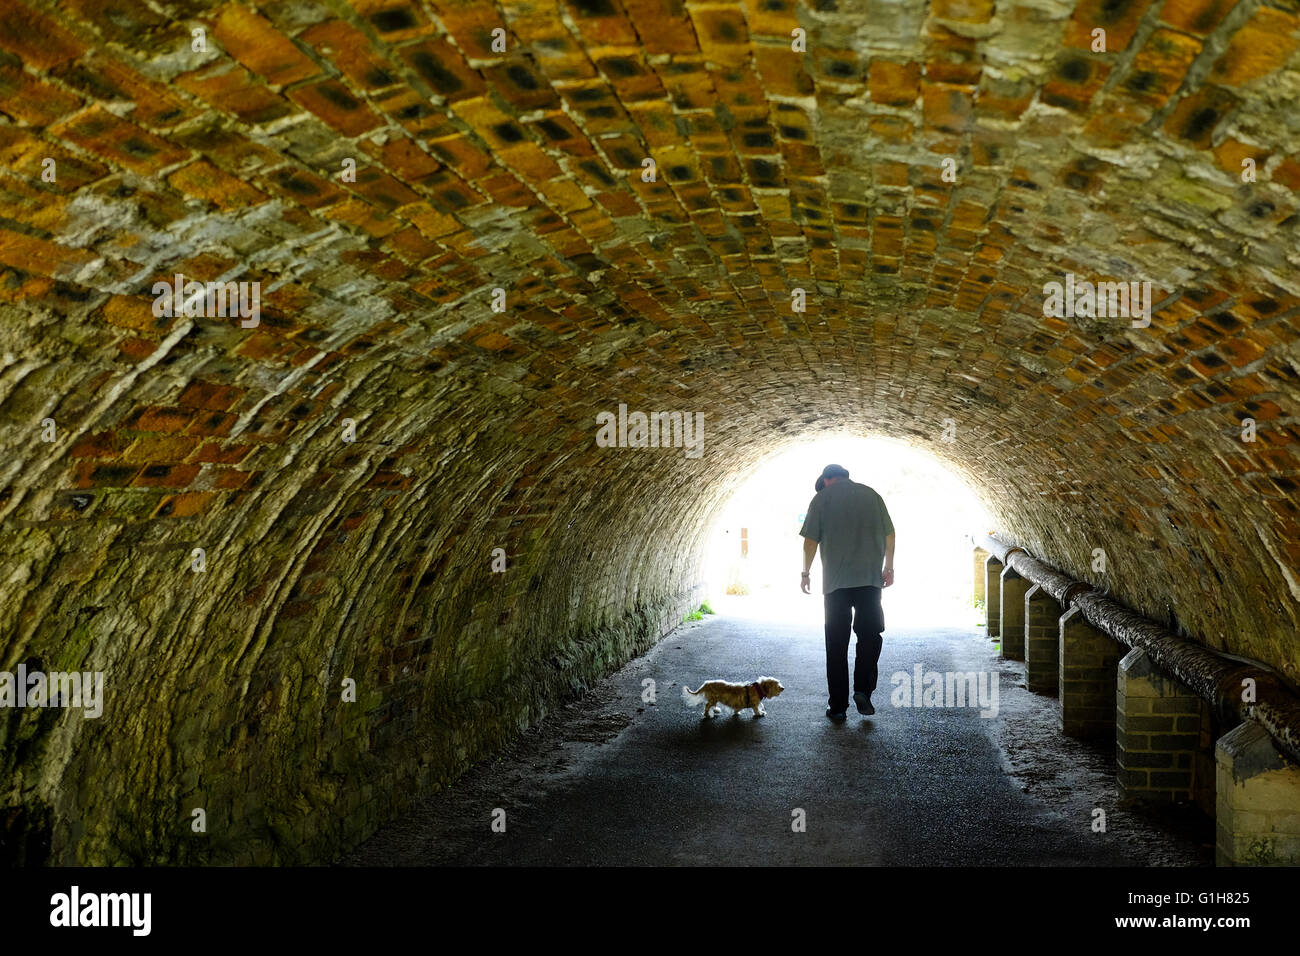 Ein Mann und ein kleiner Hund, eingerahmt in das helle Licht weit Eingangs einen Backstein gesäumten tunnel Stockfoto